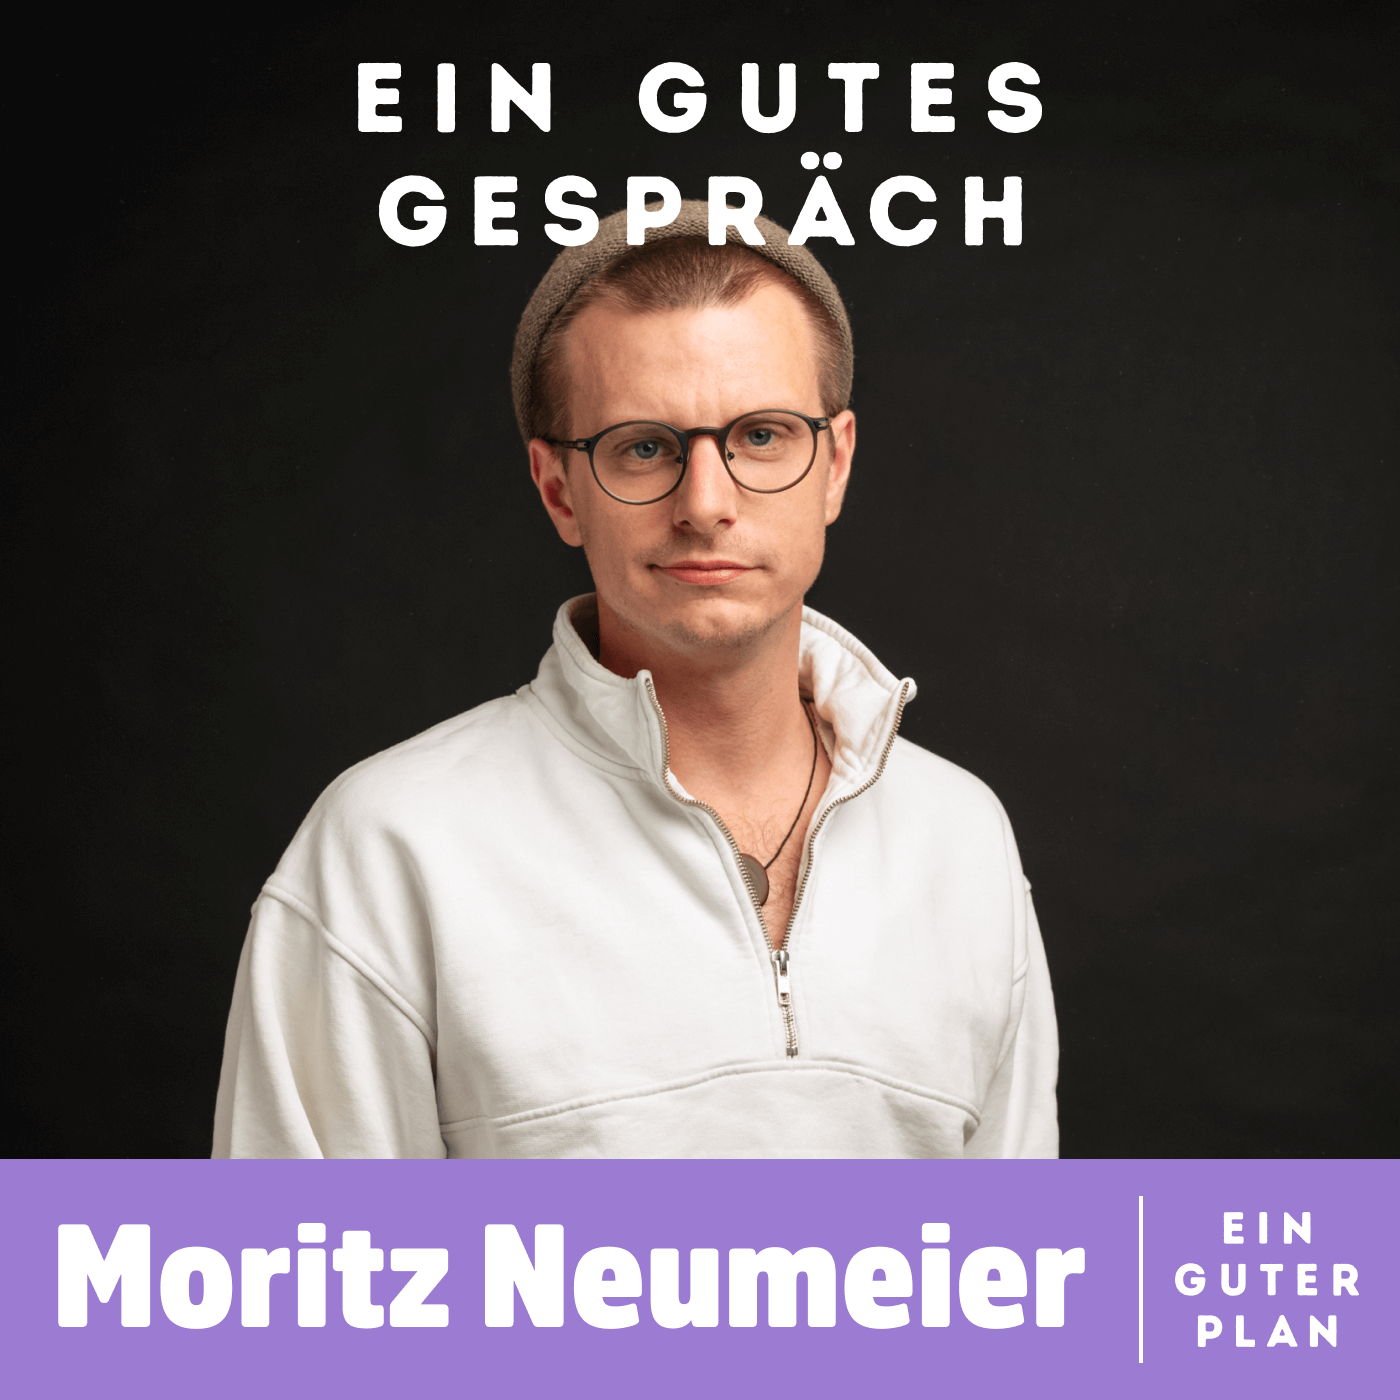 Moritz Neumeier, wie findet man Balance zwischen Humor und Haltung?